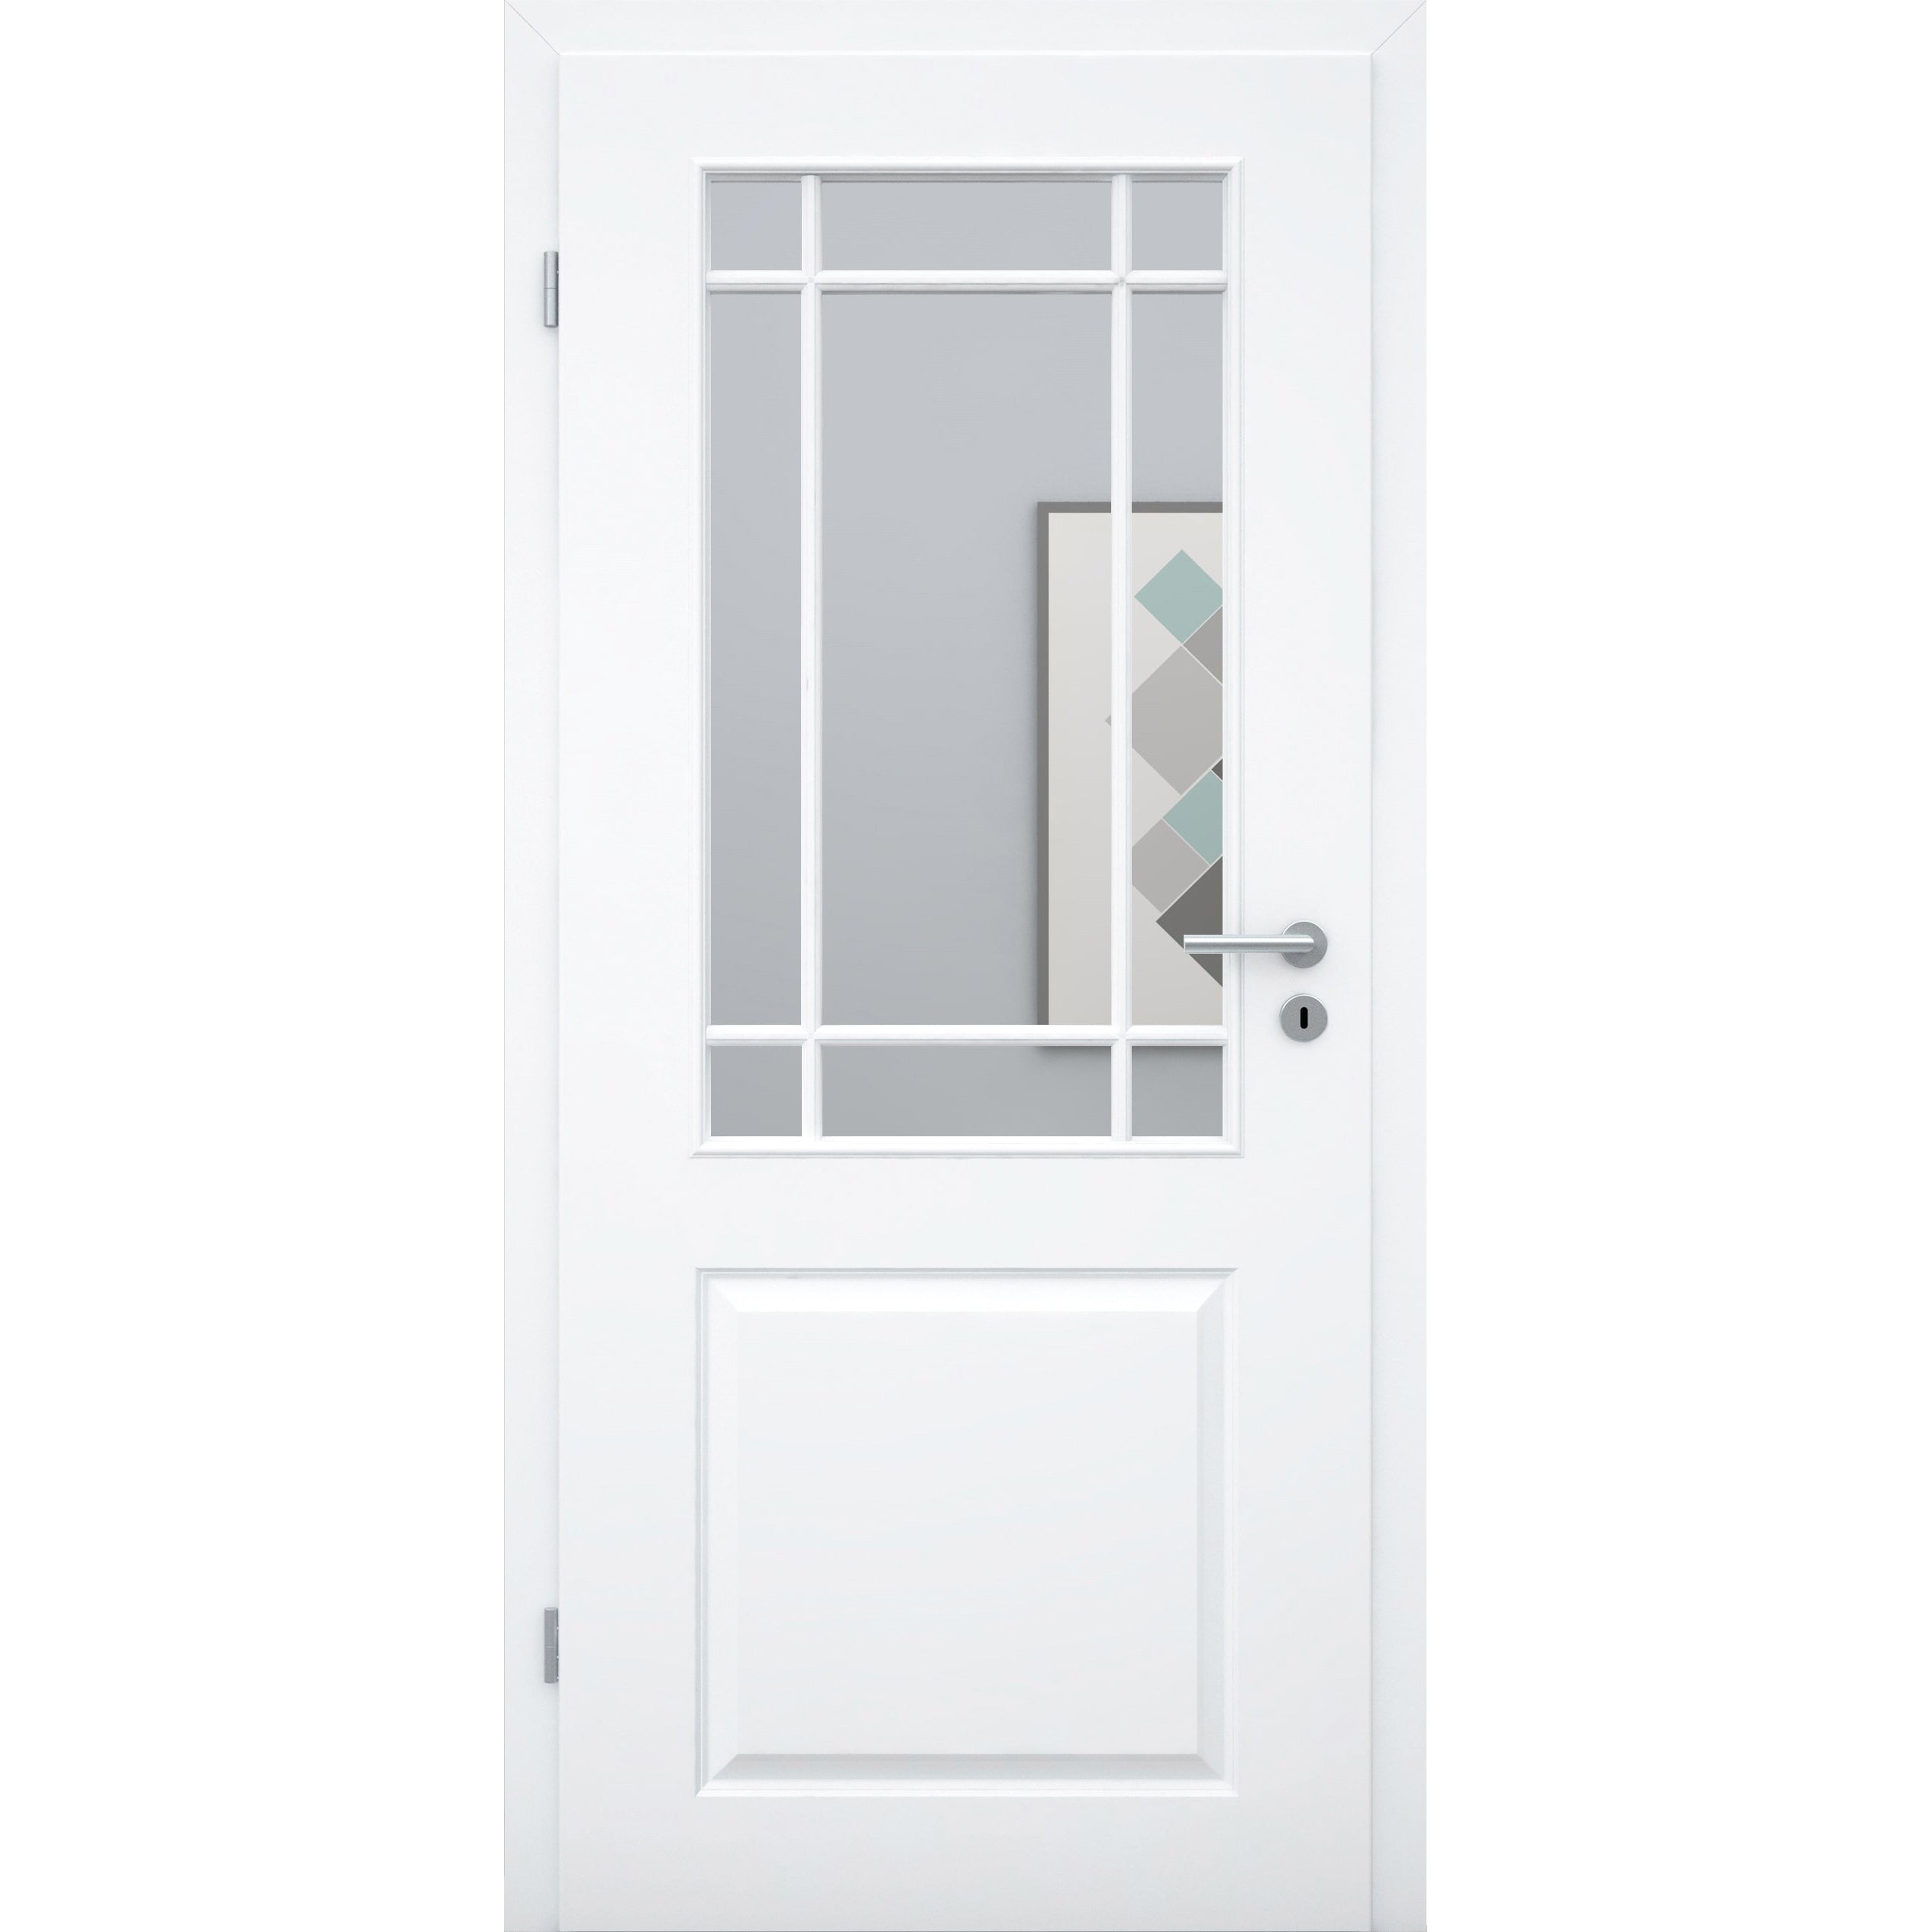 Zimmertür mit Lichtausschnitt mit Sprossenrahmen klassisch brillant-weiß 2 Kassetten Designkante - Modell Stiltür K23LASPK